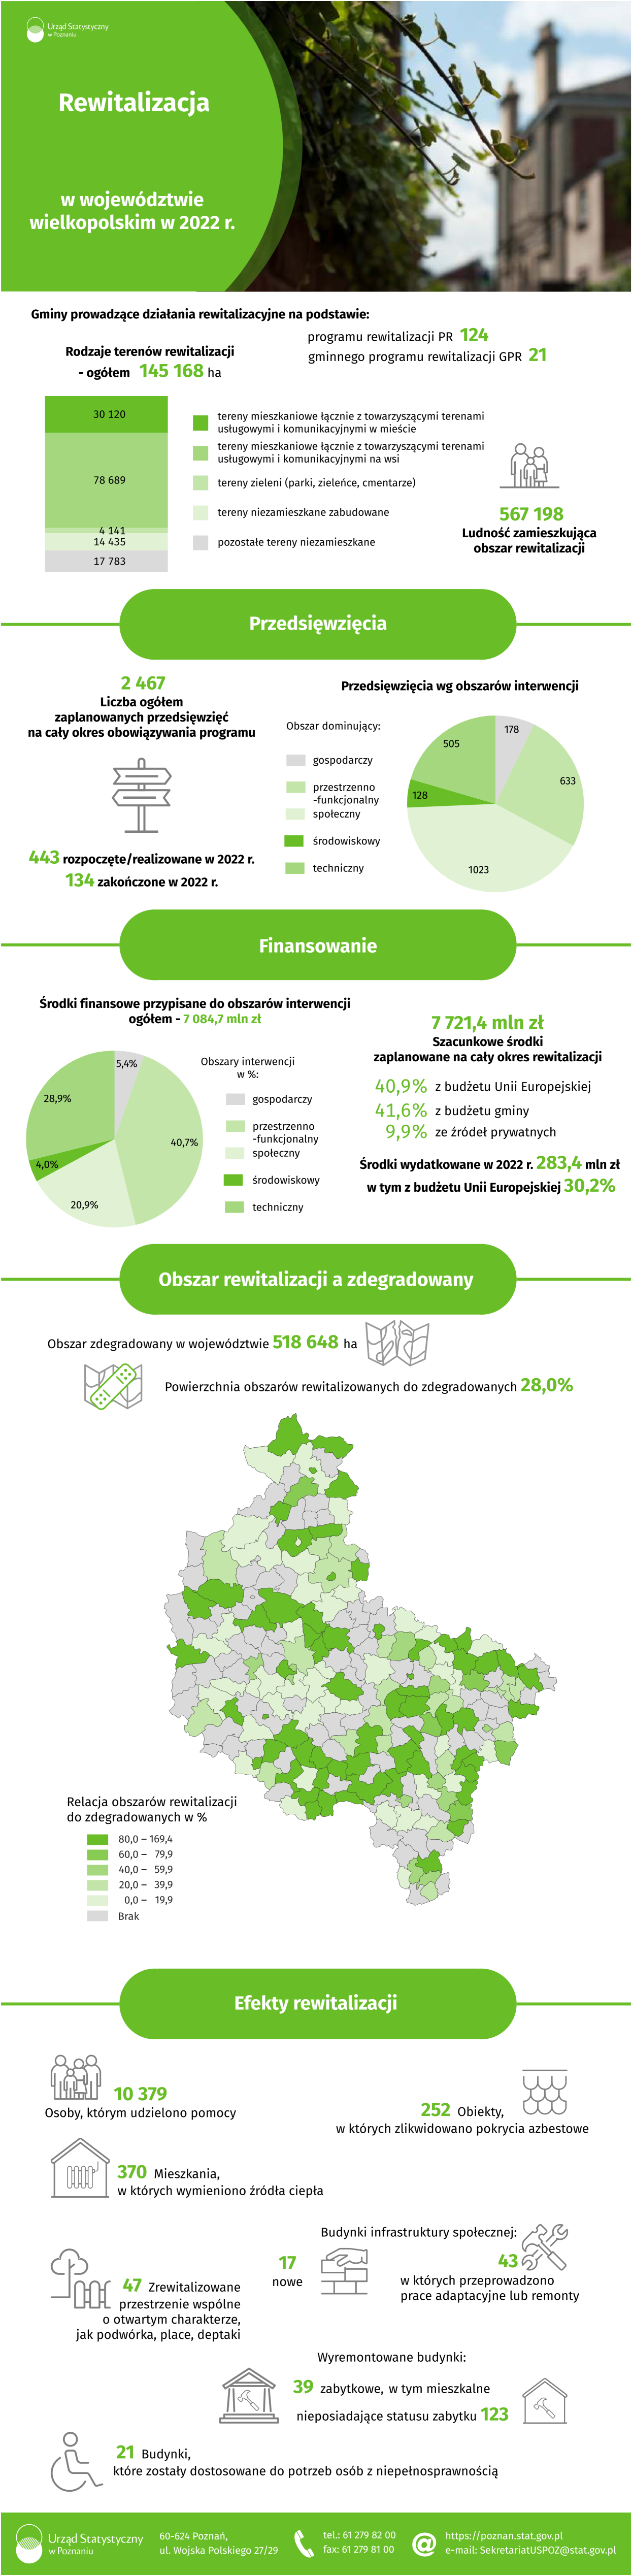 Infografika Rewitalizacja w województwie wielkopolskim w 2022 r.